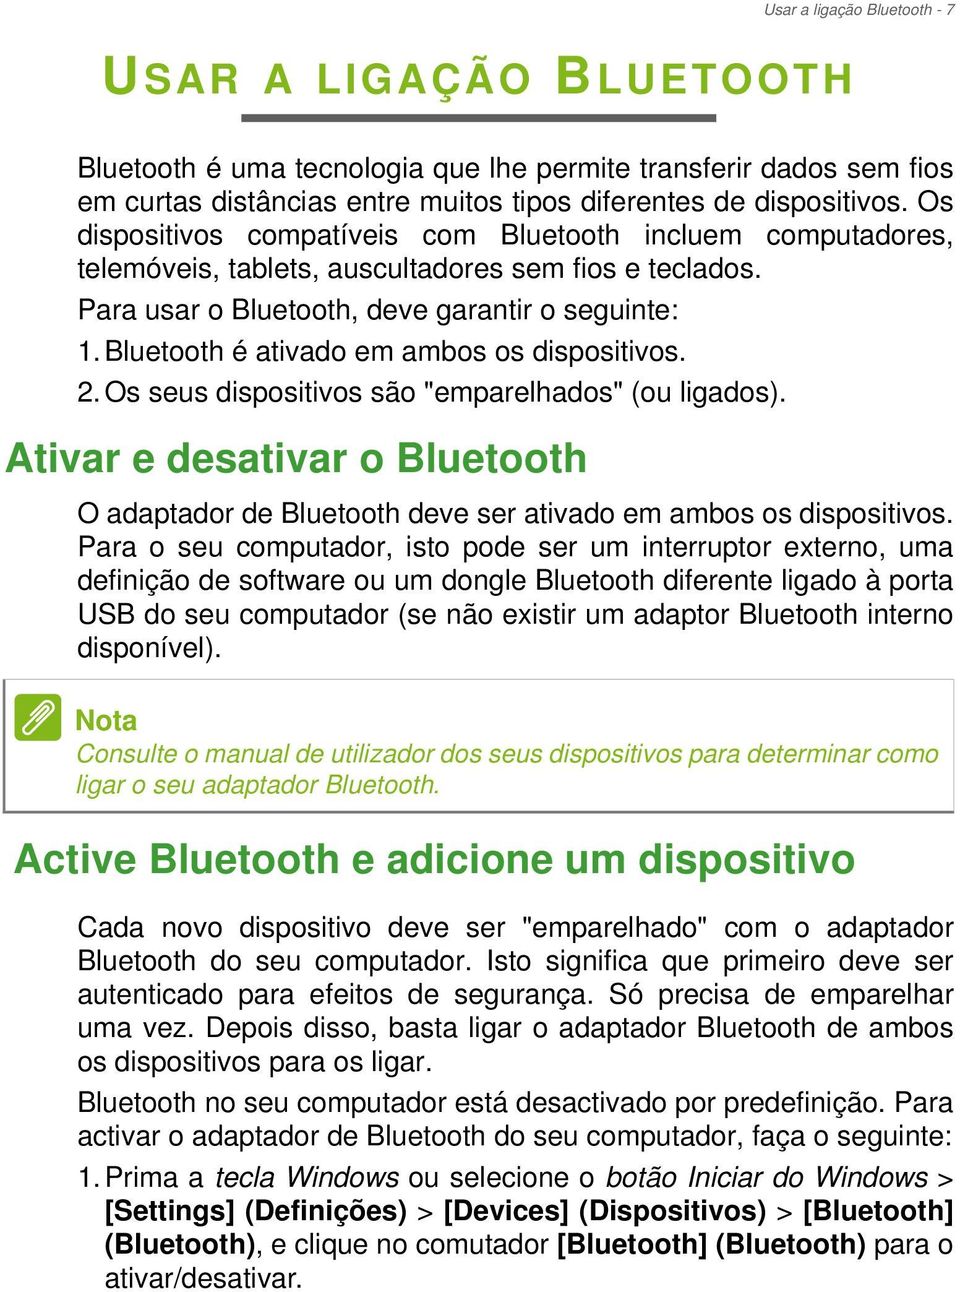 Bluetooth é ativado em ambos os dispositivos. 2. Os seus dispositivos são "emparelhados" (ou ligados).